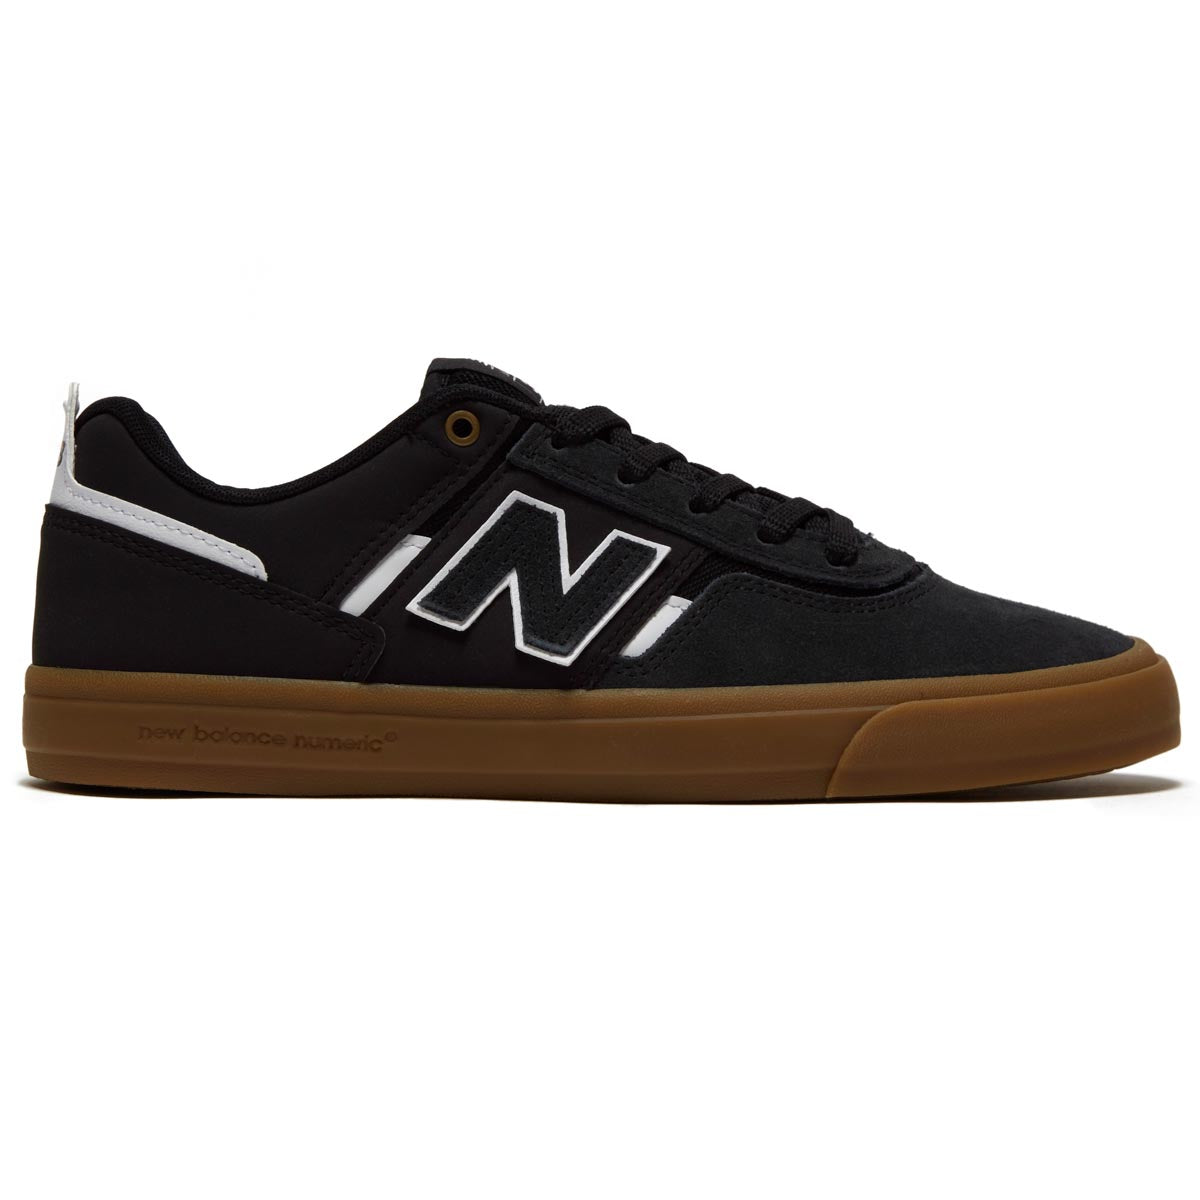 New Balance 306 Foy Shoes - Black/White/Gum image 1